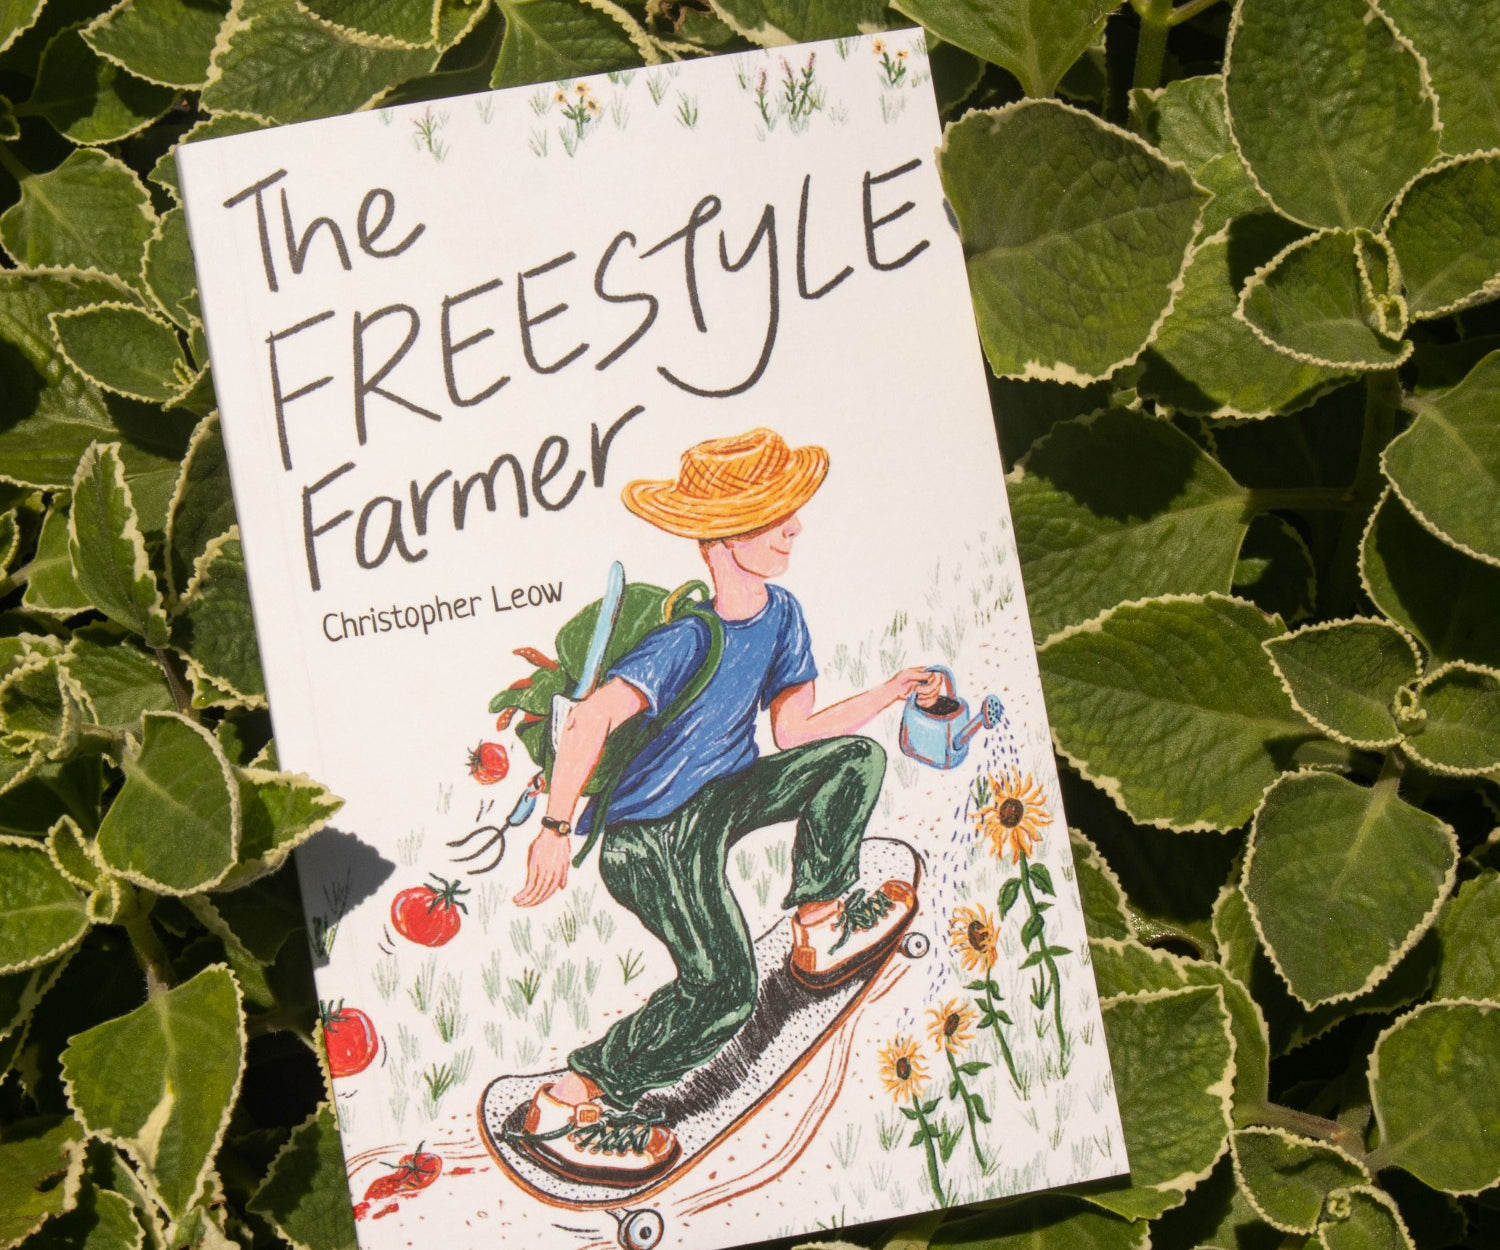 Pass It On Singapore, The Freestyle Farmer by Christopher Leow, Urban Farming Singapore, Farm to Table Singapore